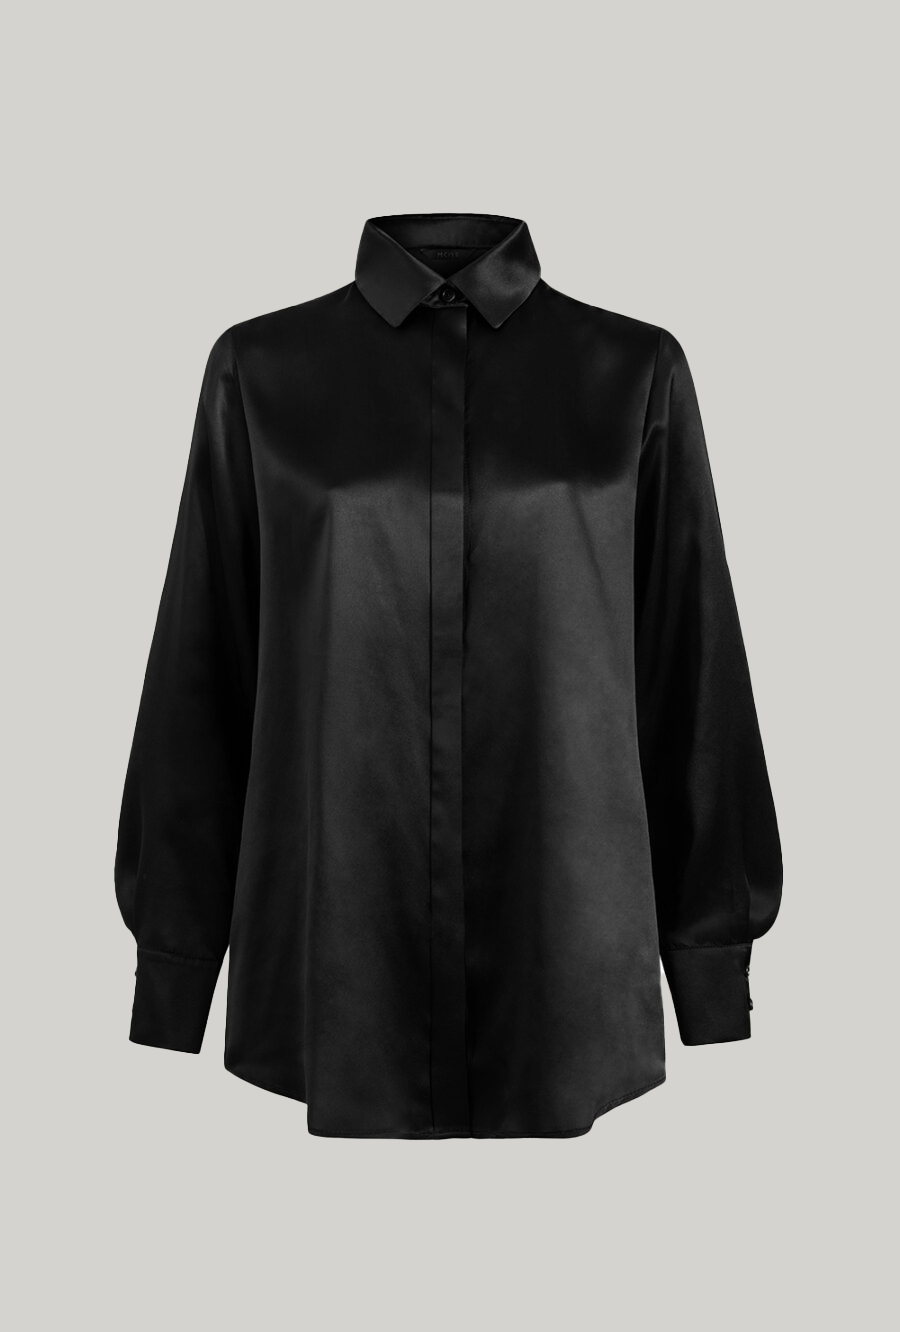 Black silk satin classic shirt Czarna jedwabna koszula z satyny